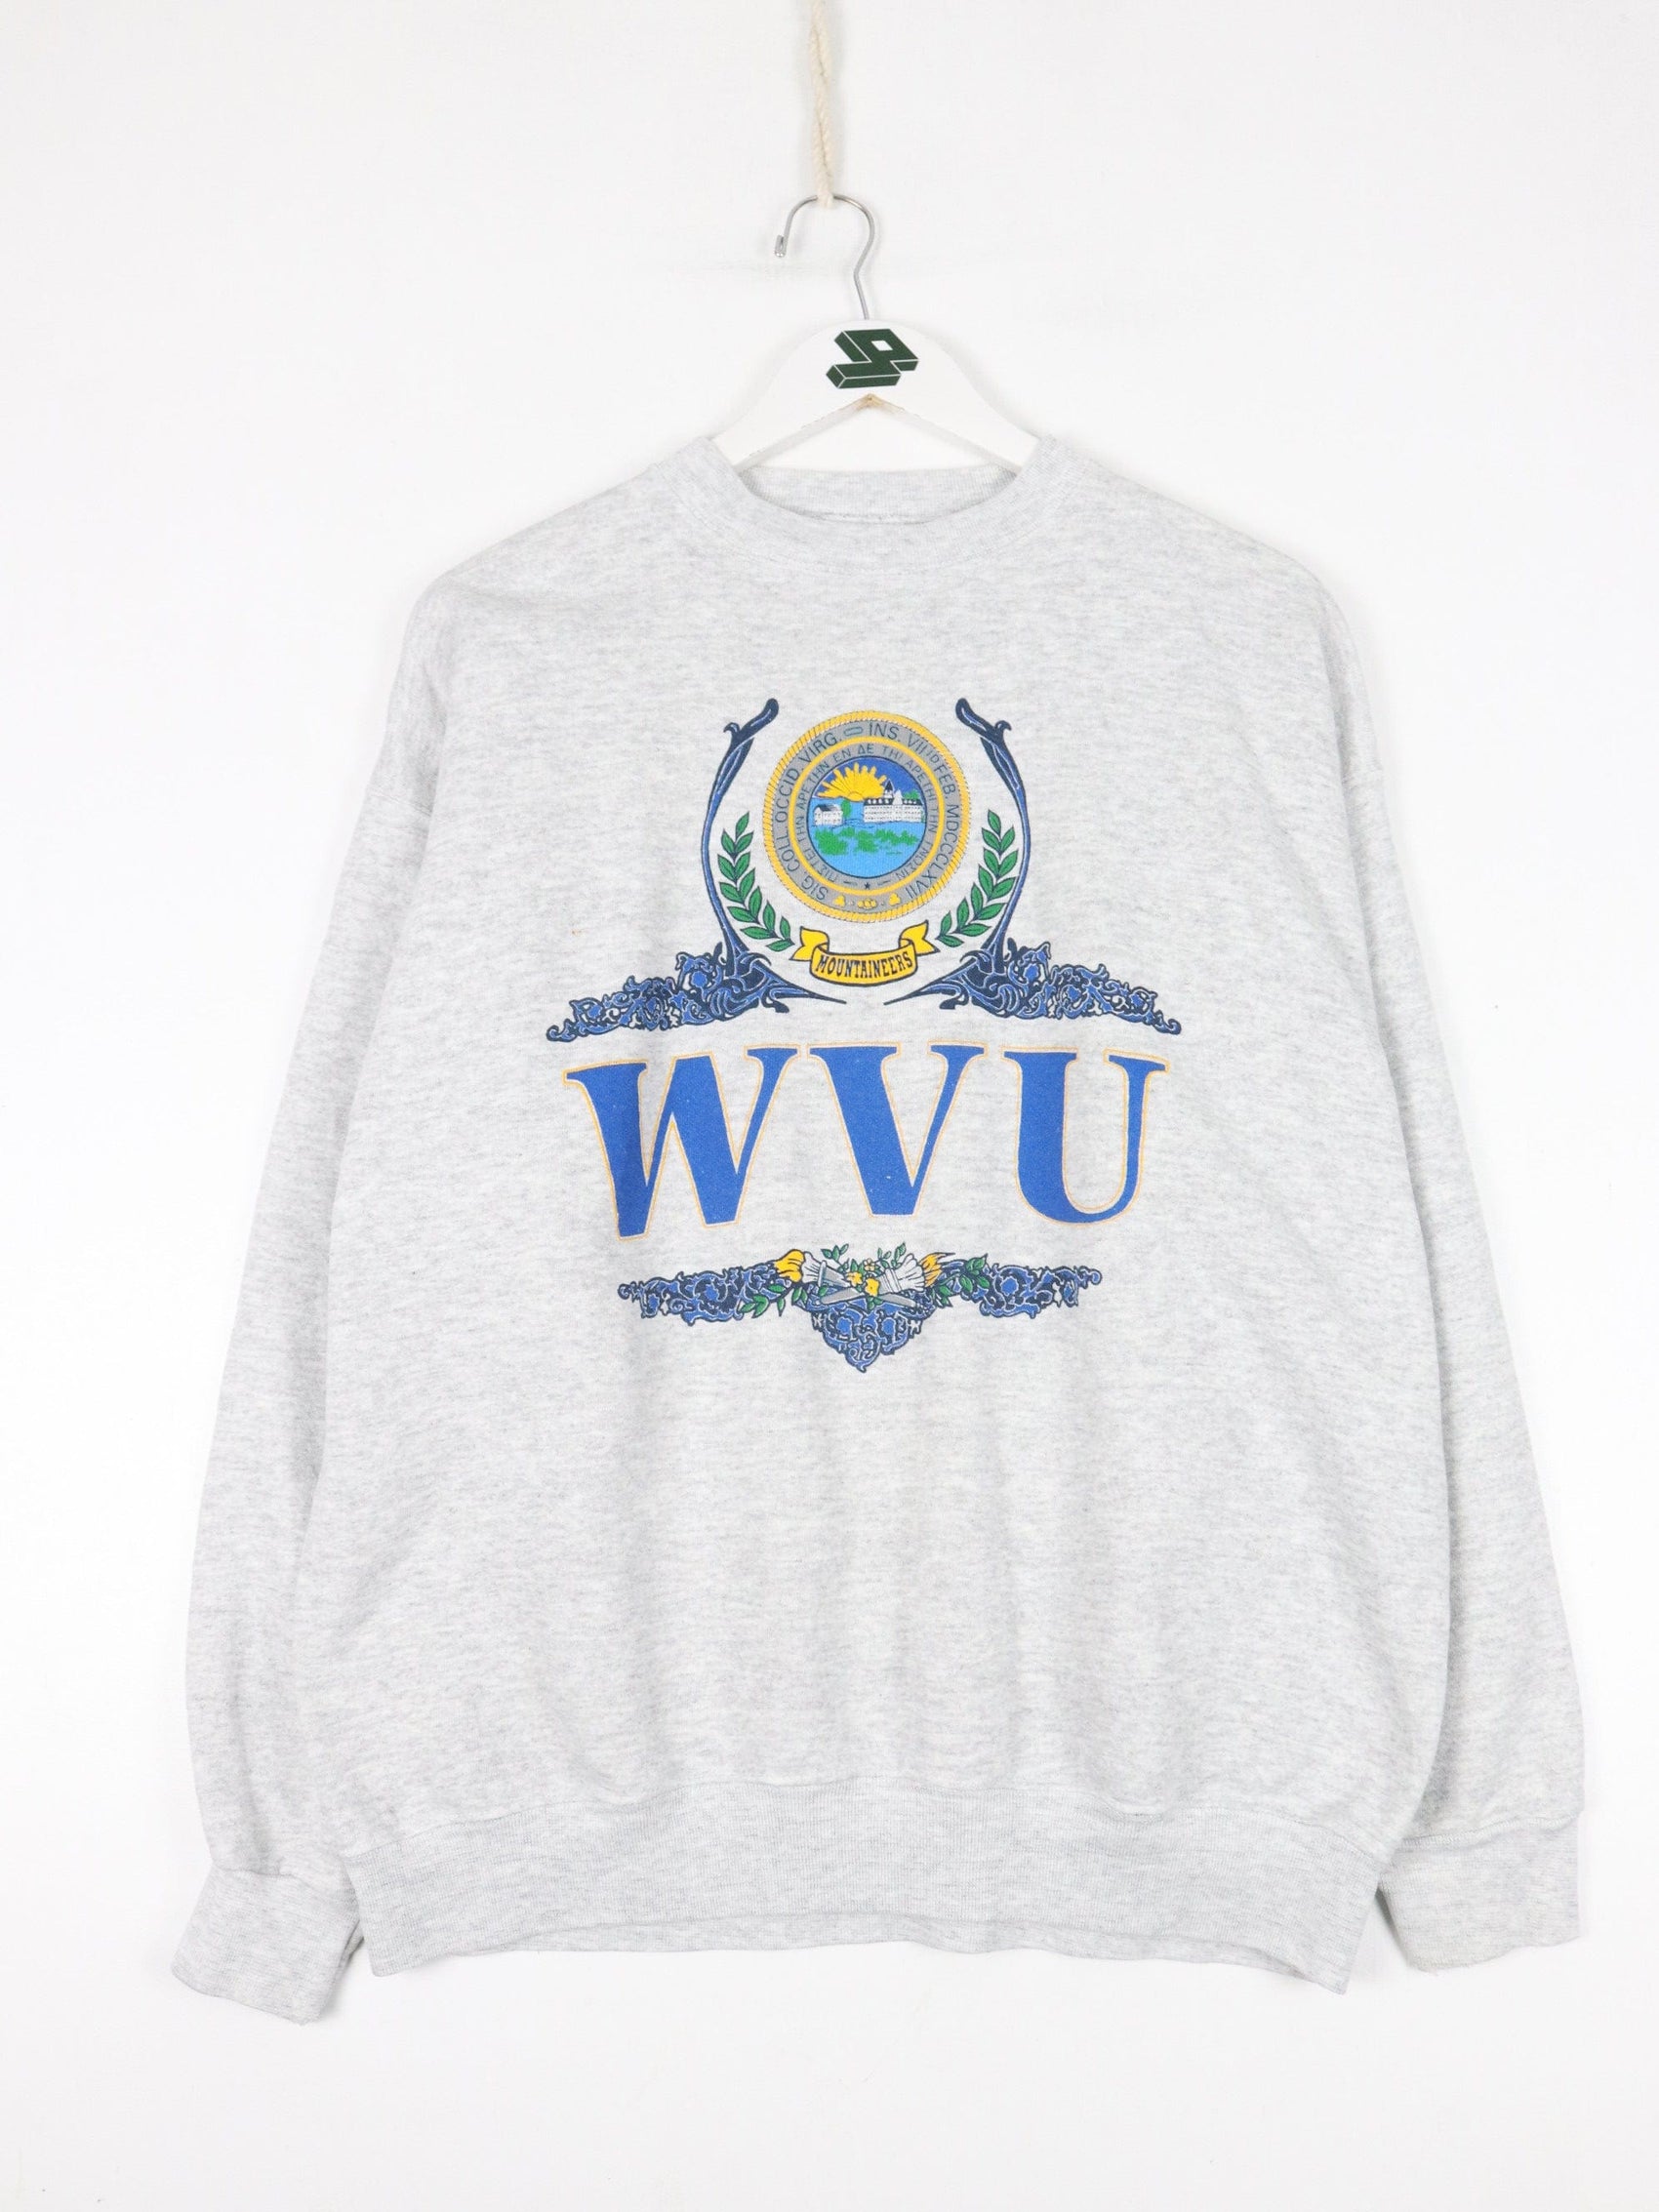 Collegiate Sweatshirts & Hoodies Vintage West Virginia University Sweatshirt Fits Mens Large Grey College